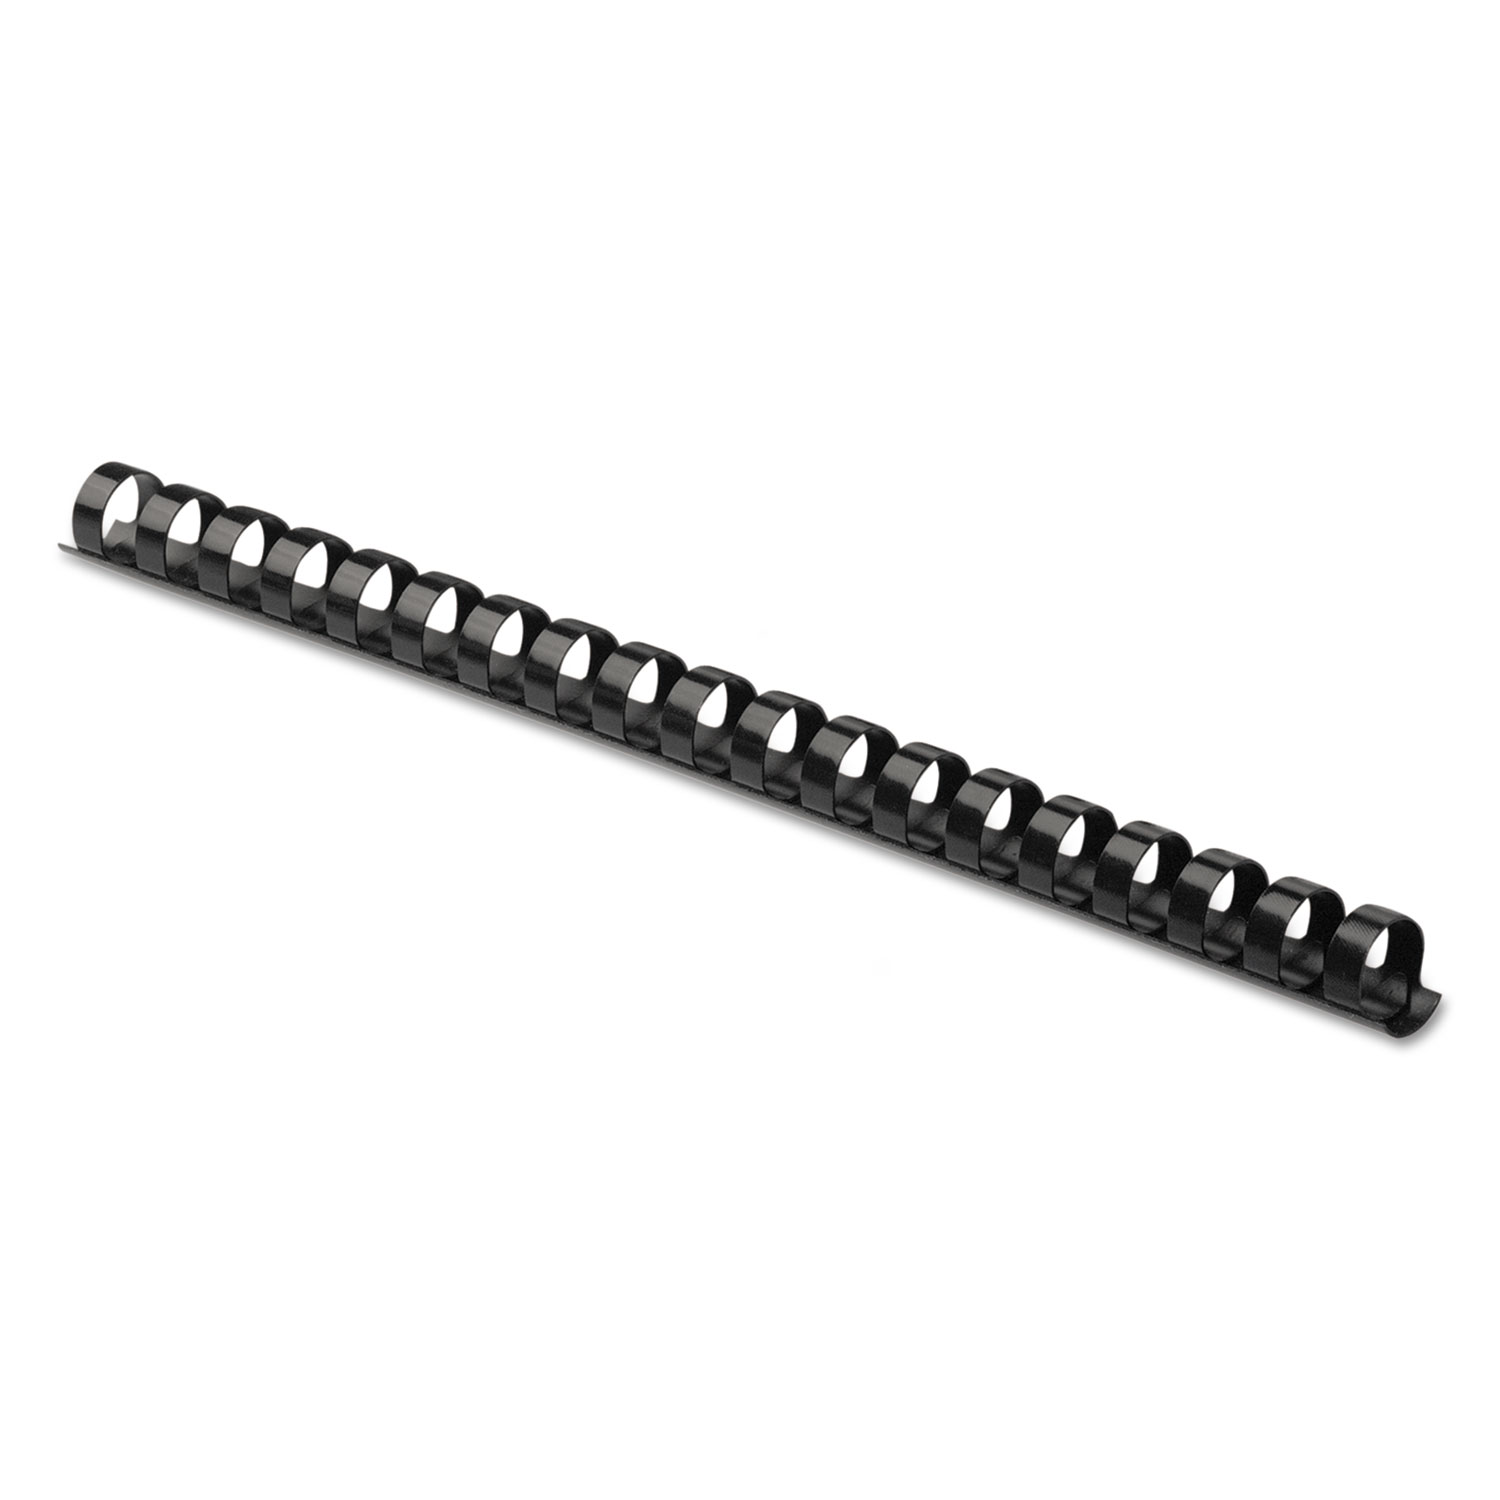 Plastic Comb Bindings, 3/8" Diameter, 55 Sheet Capacity, Black, 100 Combs/Pack